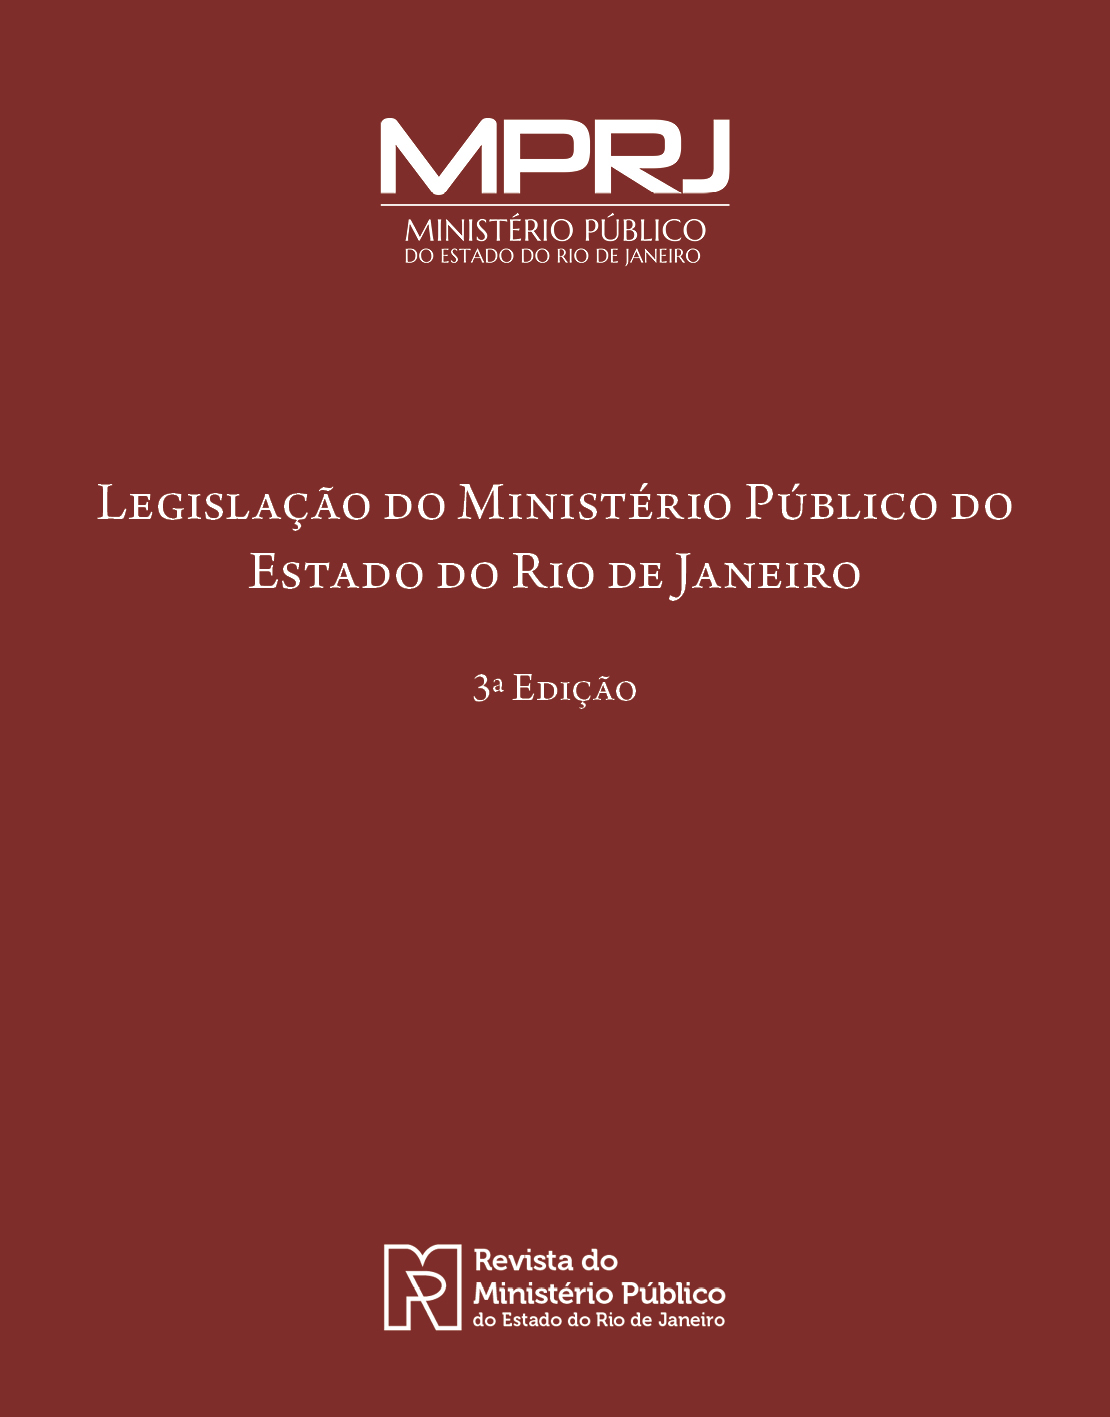 Imagem representativa da Livro Legislação do MPRJ